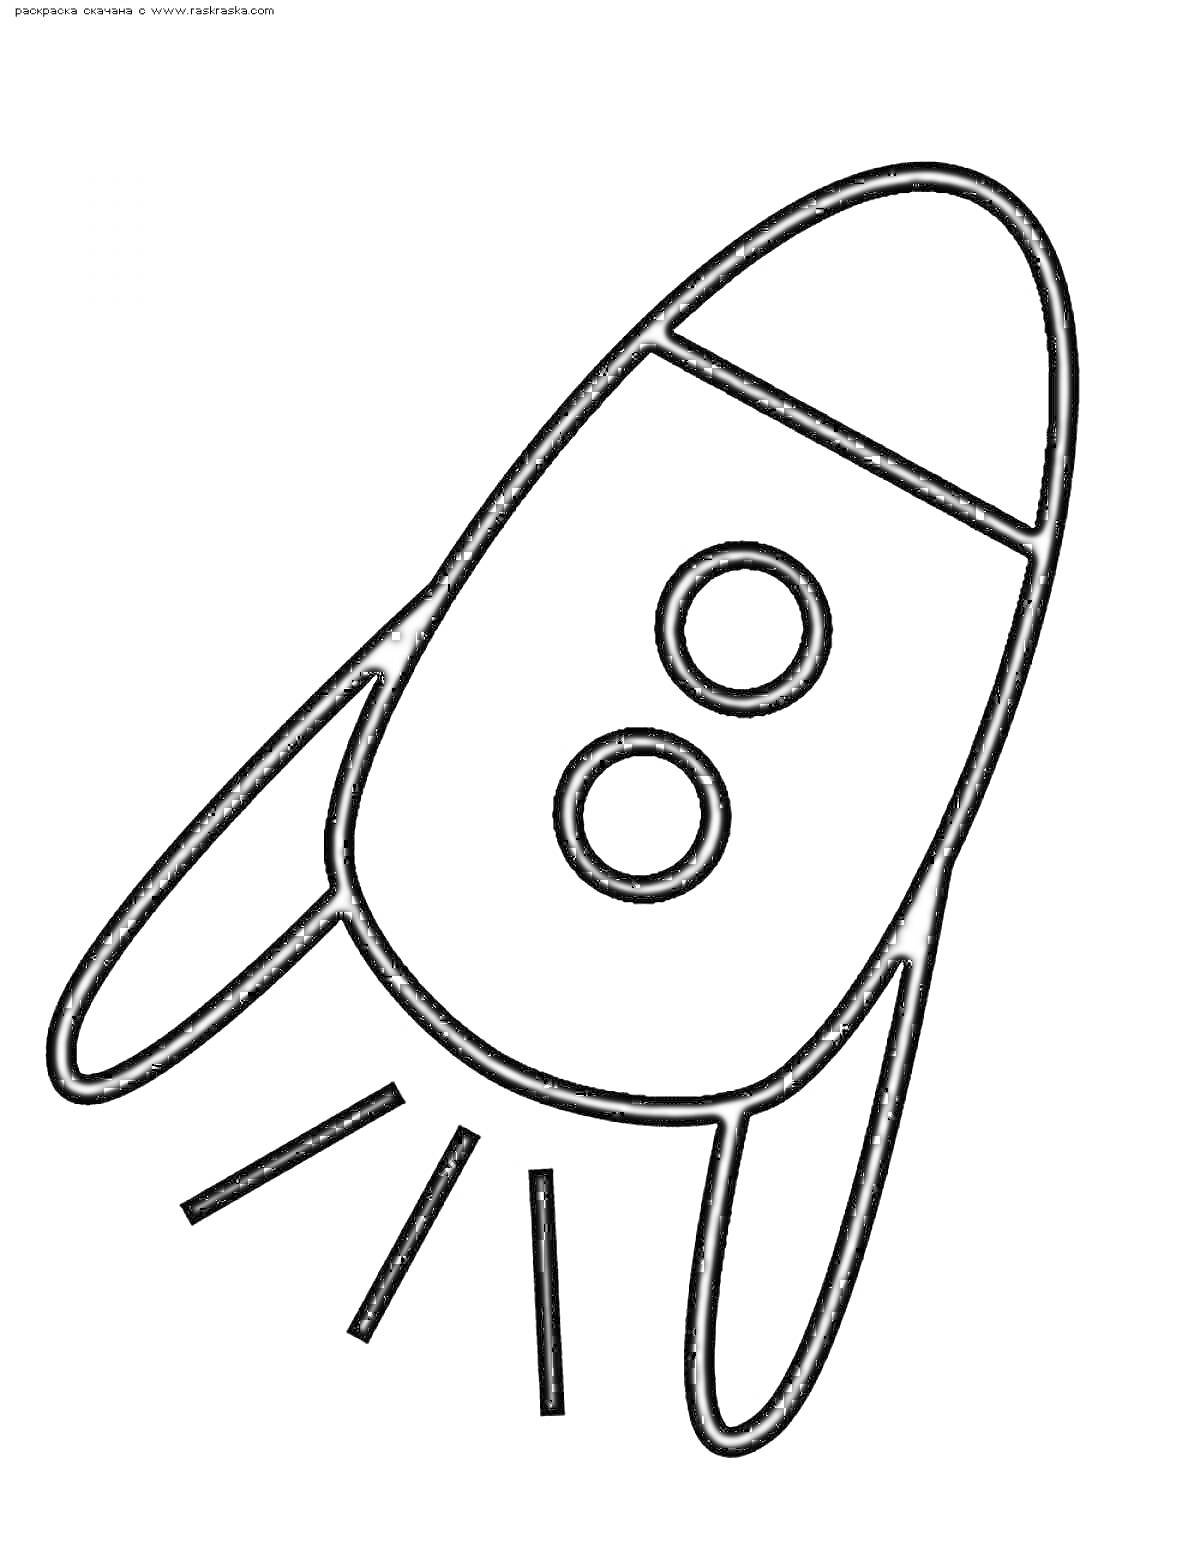 Раскраска Ракета с двумя иллюминаторами и хвостовым пламенем